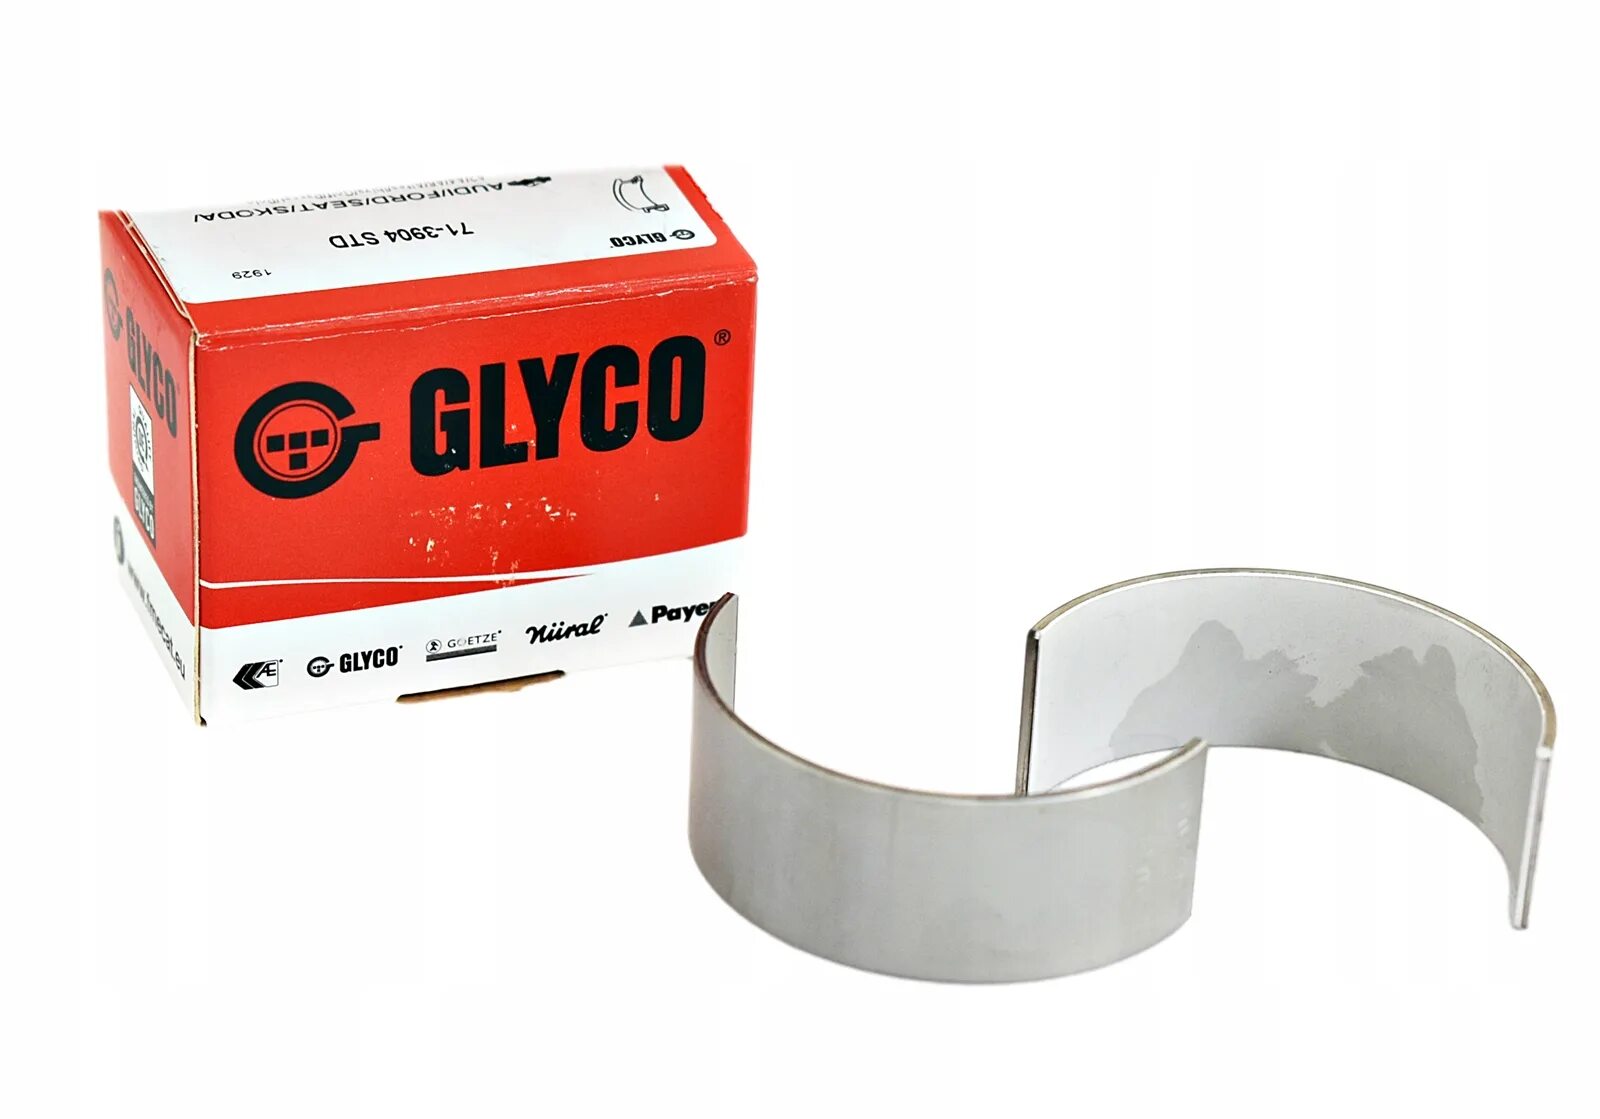 Вкладыши больше. Вкладыш шатунный стандартный VAG 1,6-2,0 GLYCO GLYCO. GLYCO вкладыши. GLYCO 55-2535. Вкладыши Глико Рено.